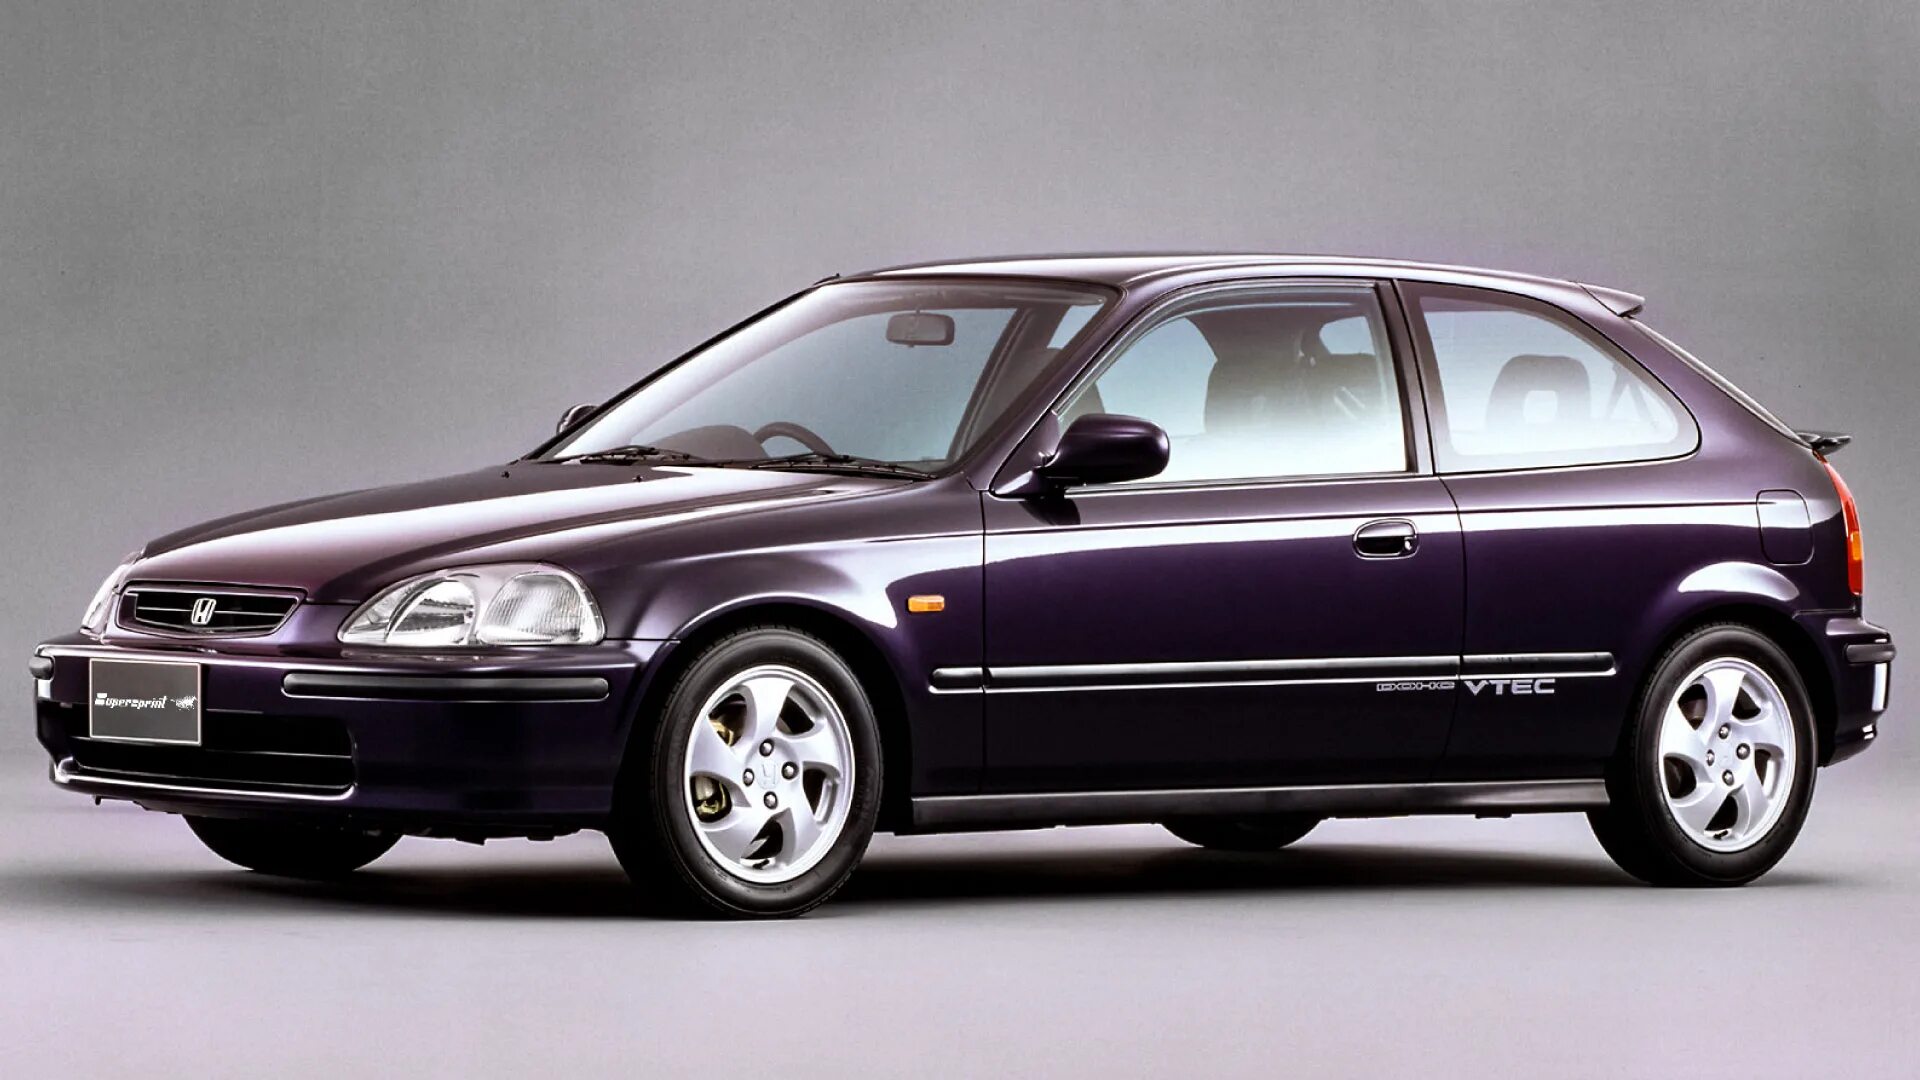 Honda Civic ek4. Honda Civic vi 1995. Honda Civic 1995 хэтчбек. Хонда Цивик 6 поколение седан.